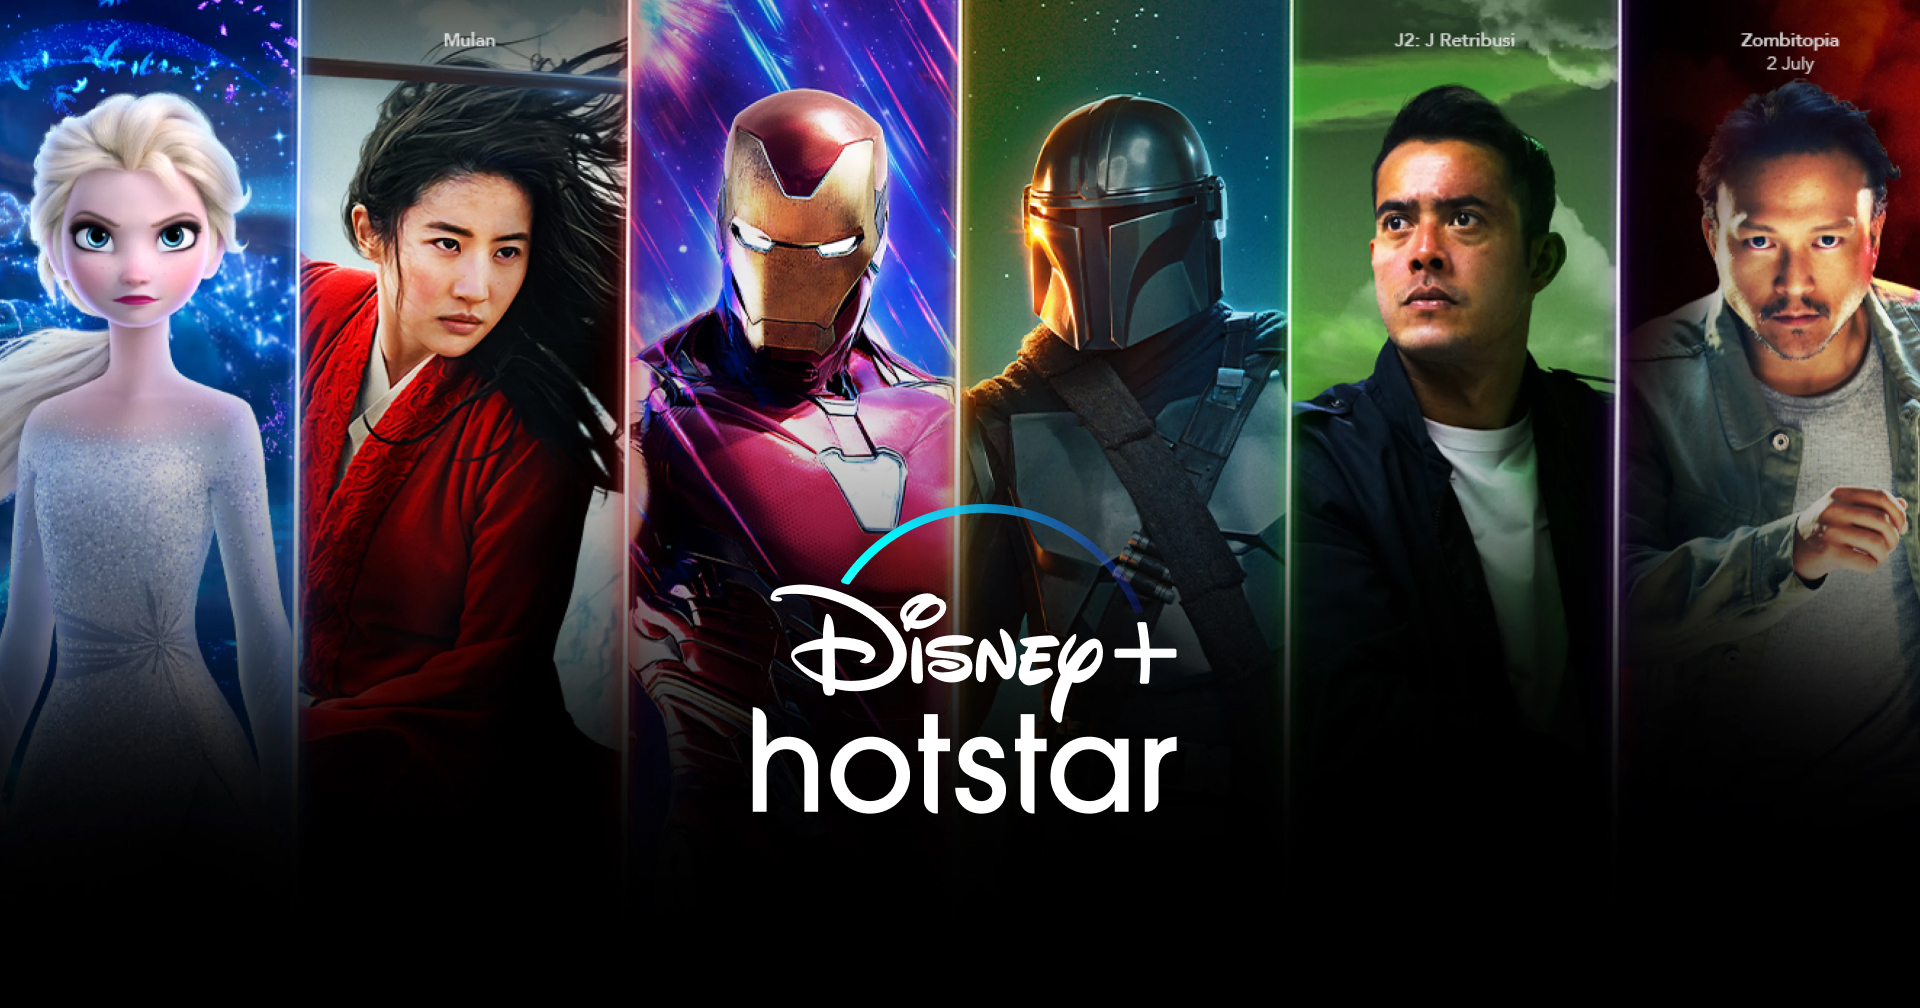 โผล่! ราคาไทย Disney+ Hotstar เหมาไตรมาส ราคาไม่ถึงร้อยต่อเดือน!